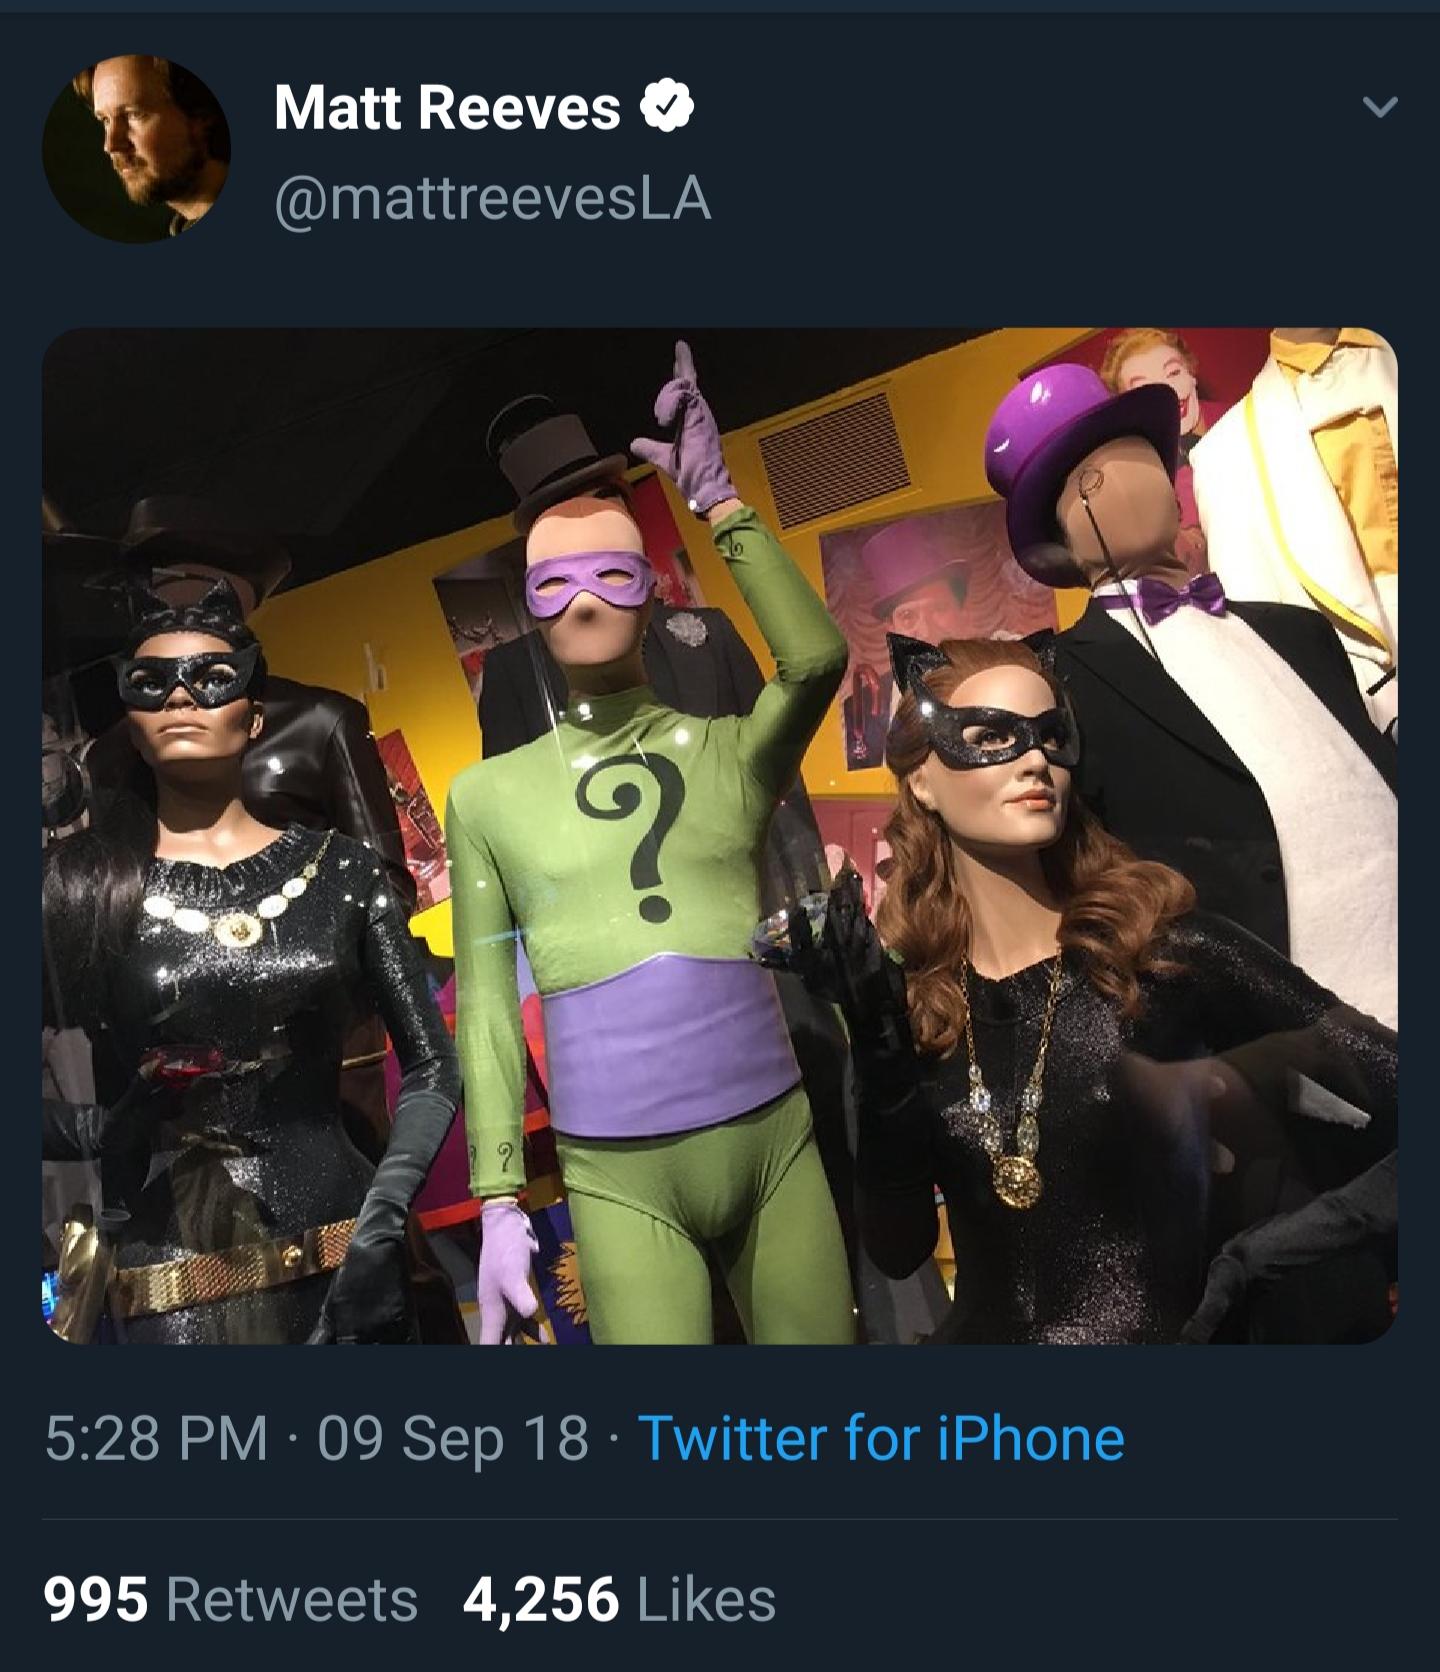 Matt Reeves tweeted this back in September 2018